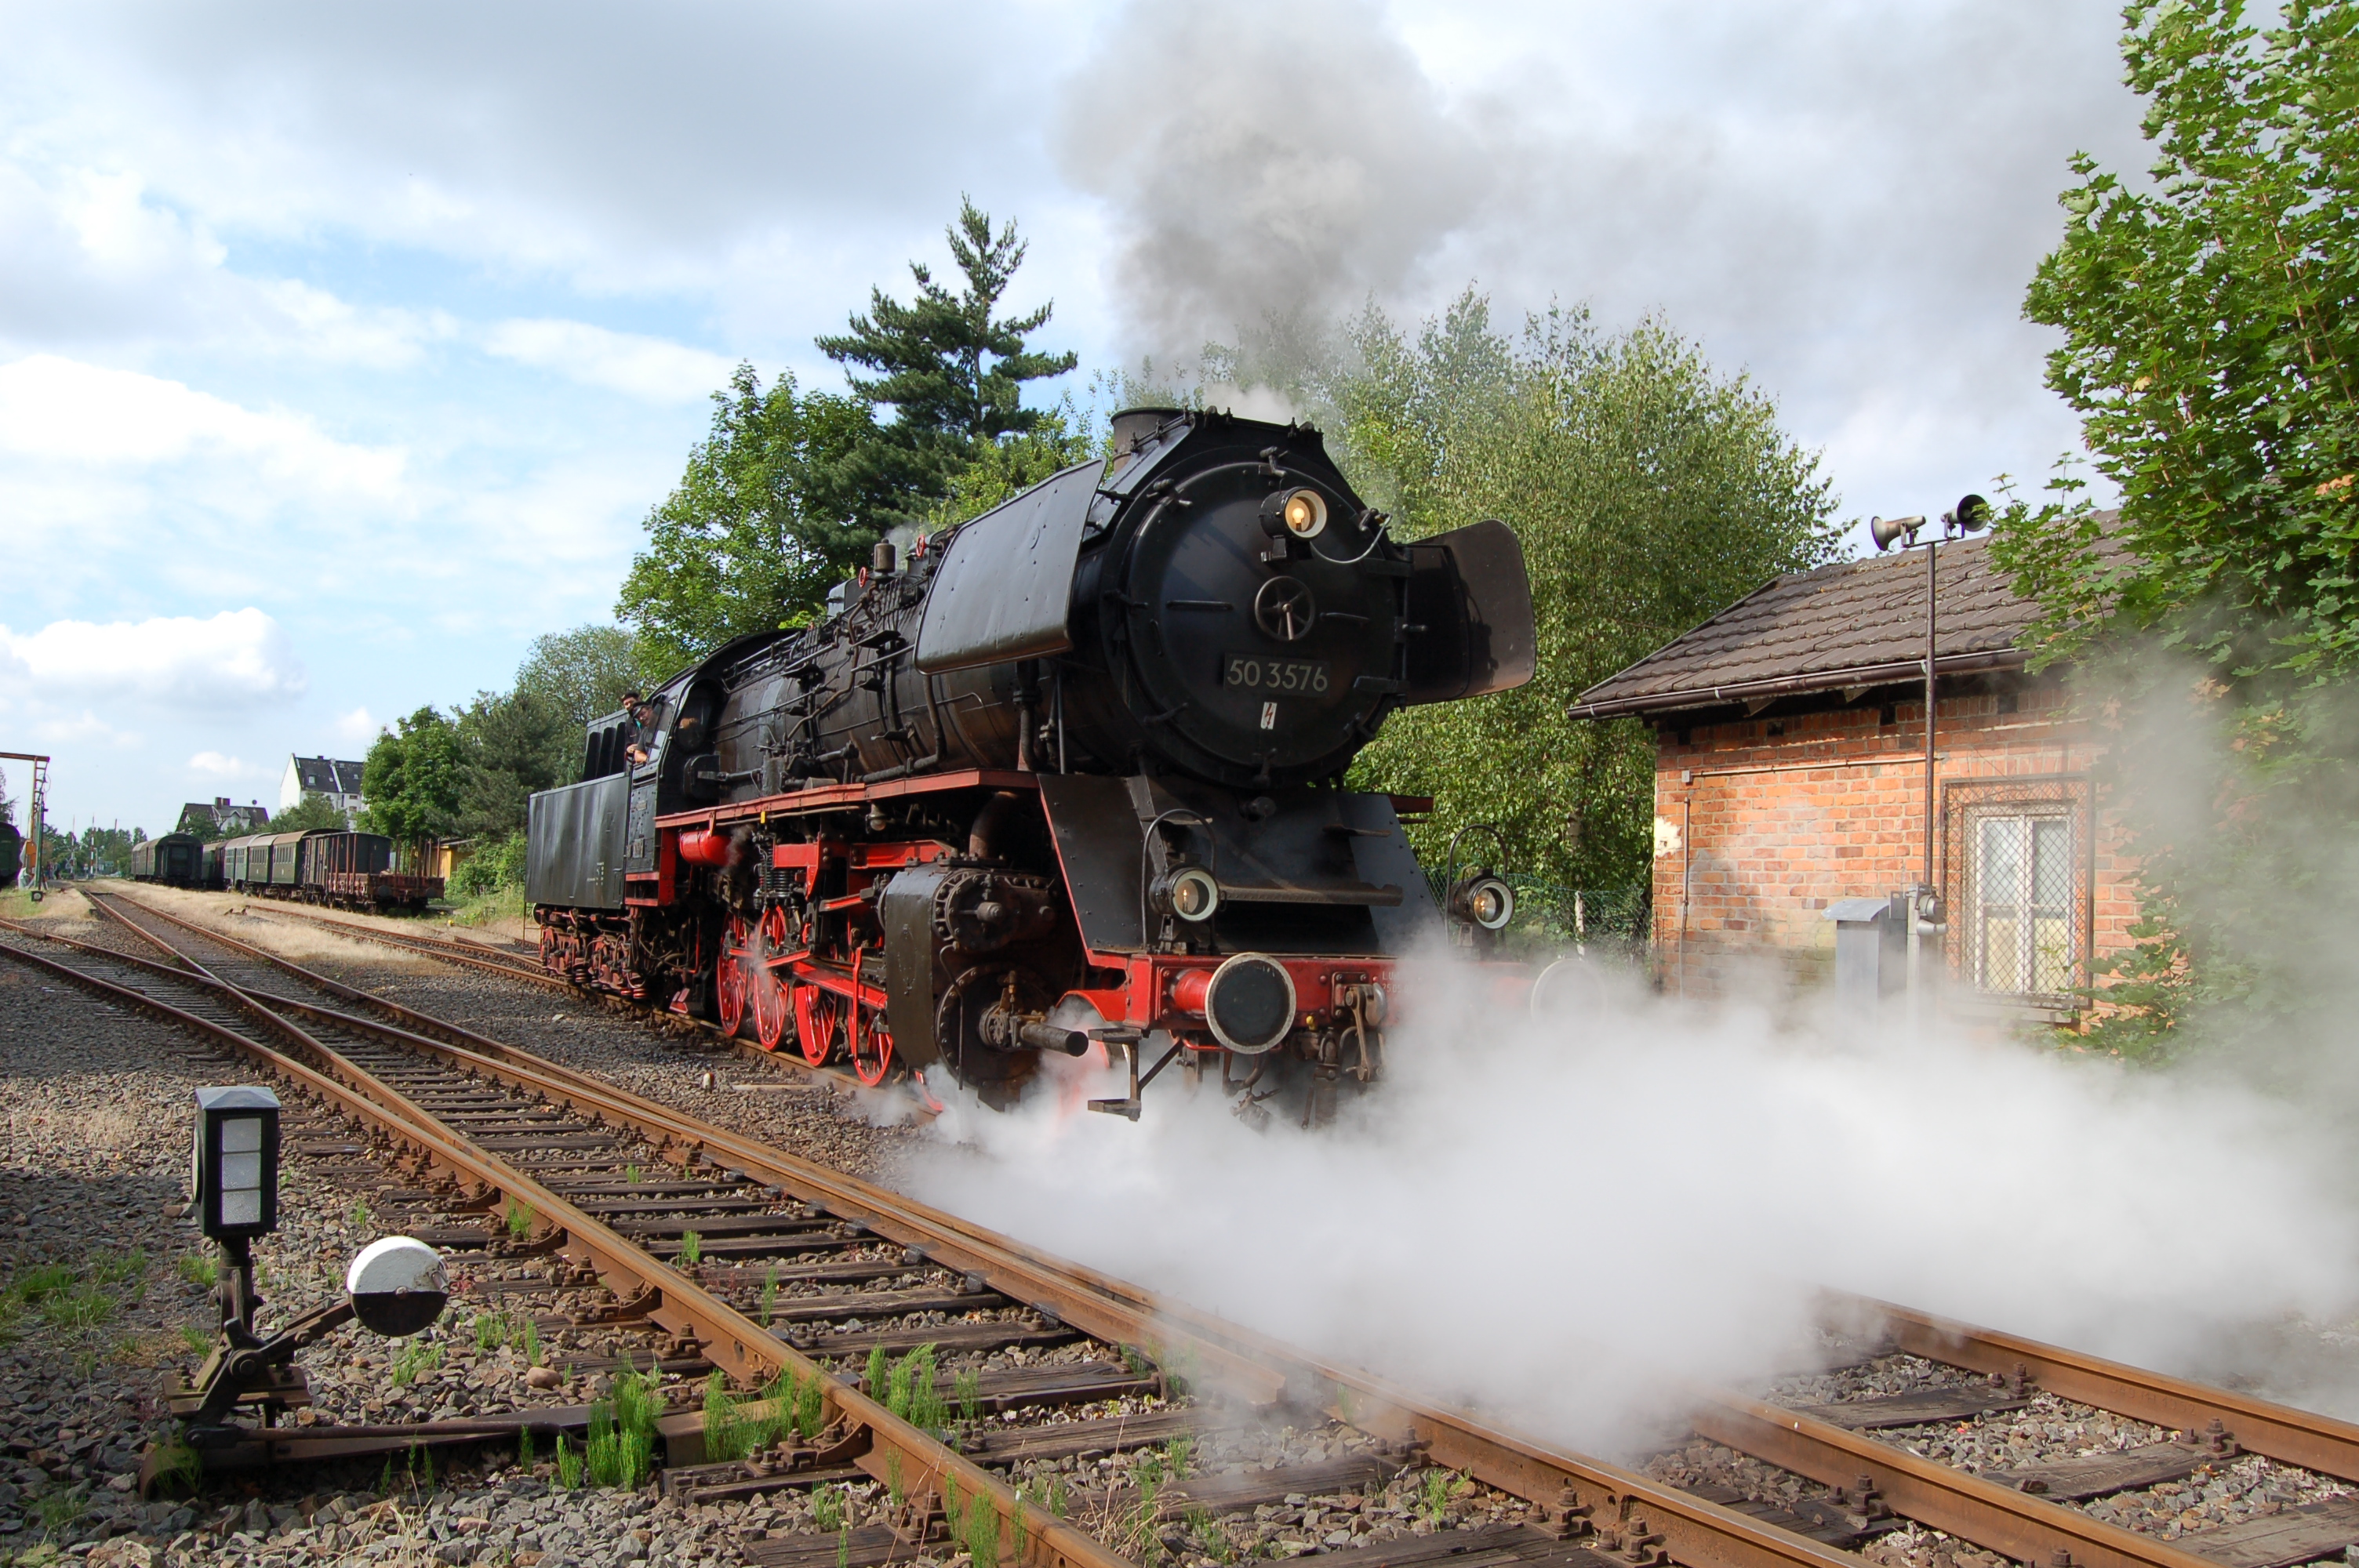 Dampflokomotive 50 3576 